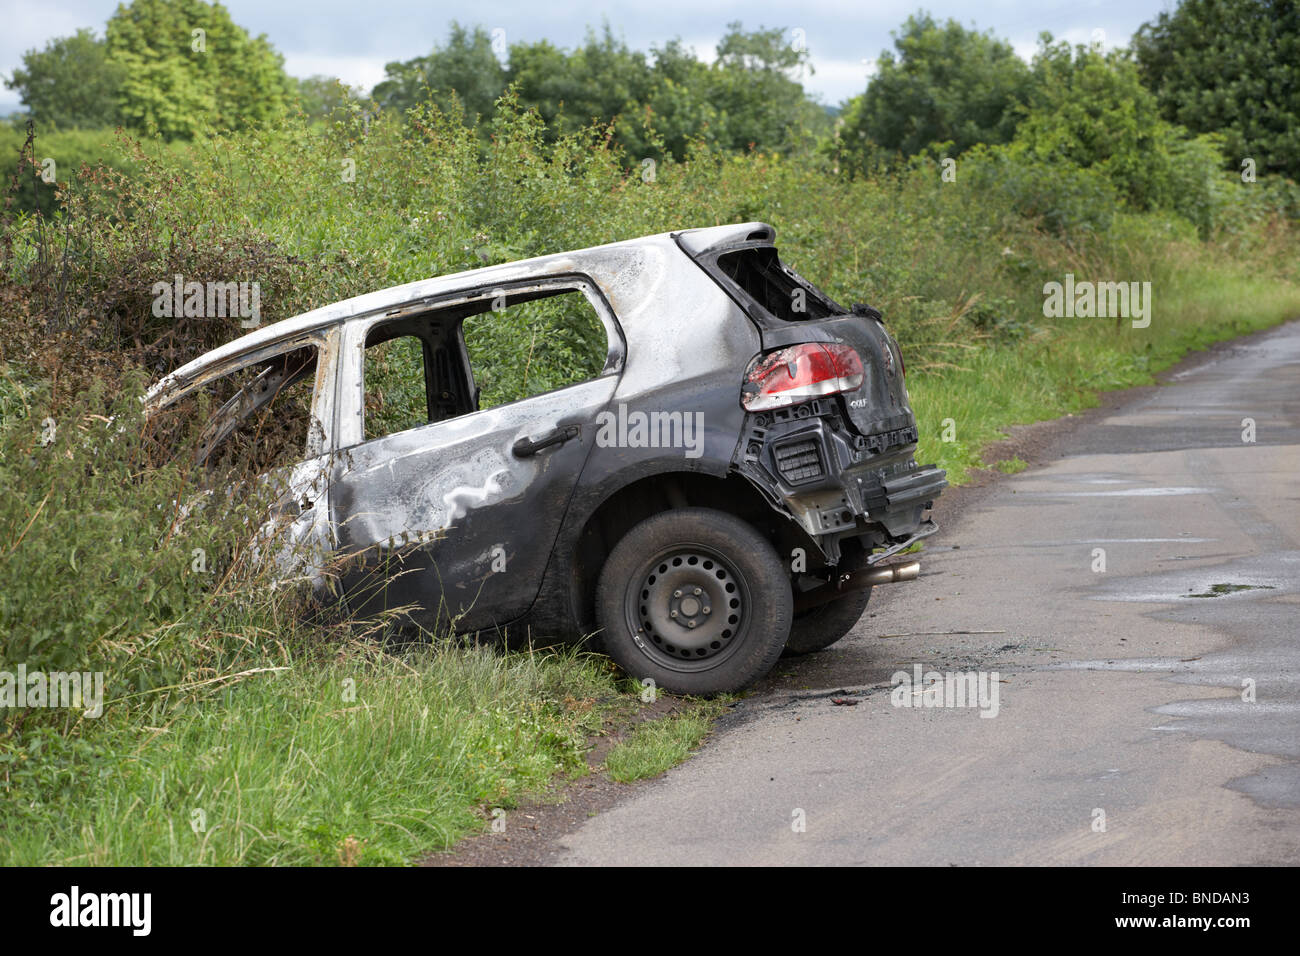 ausgebrannt, gestohlene Volkswagen Golfauto stürzte in einen Graben in Nordirland im Vereinigten Königreich Stockfoto